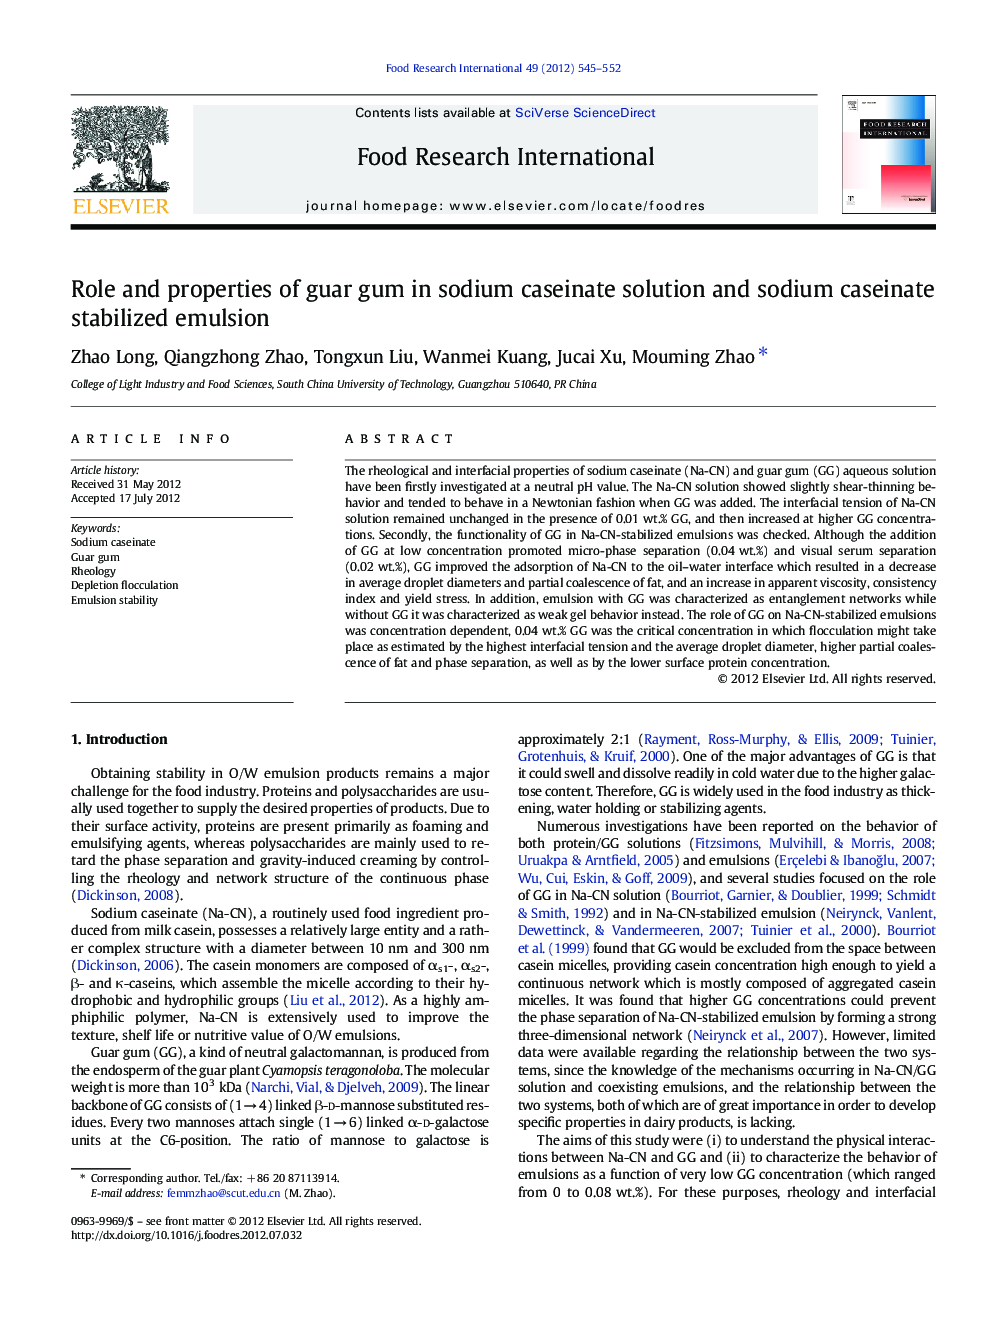 Role and properties of guar gum in sodium caseinate solution and sodium caseinate stabilized emulsion